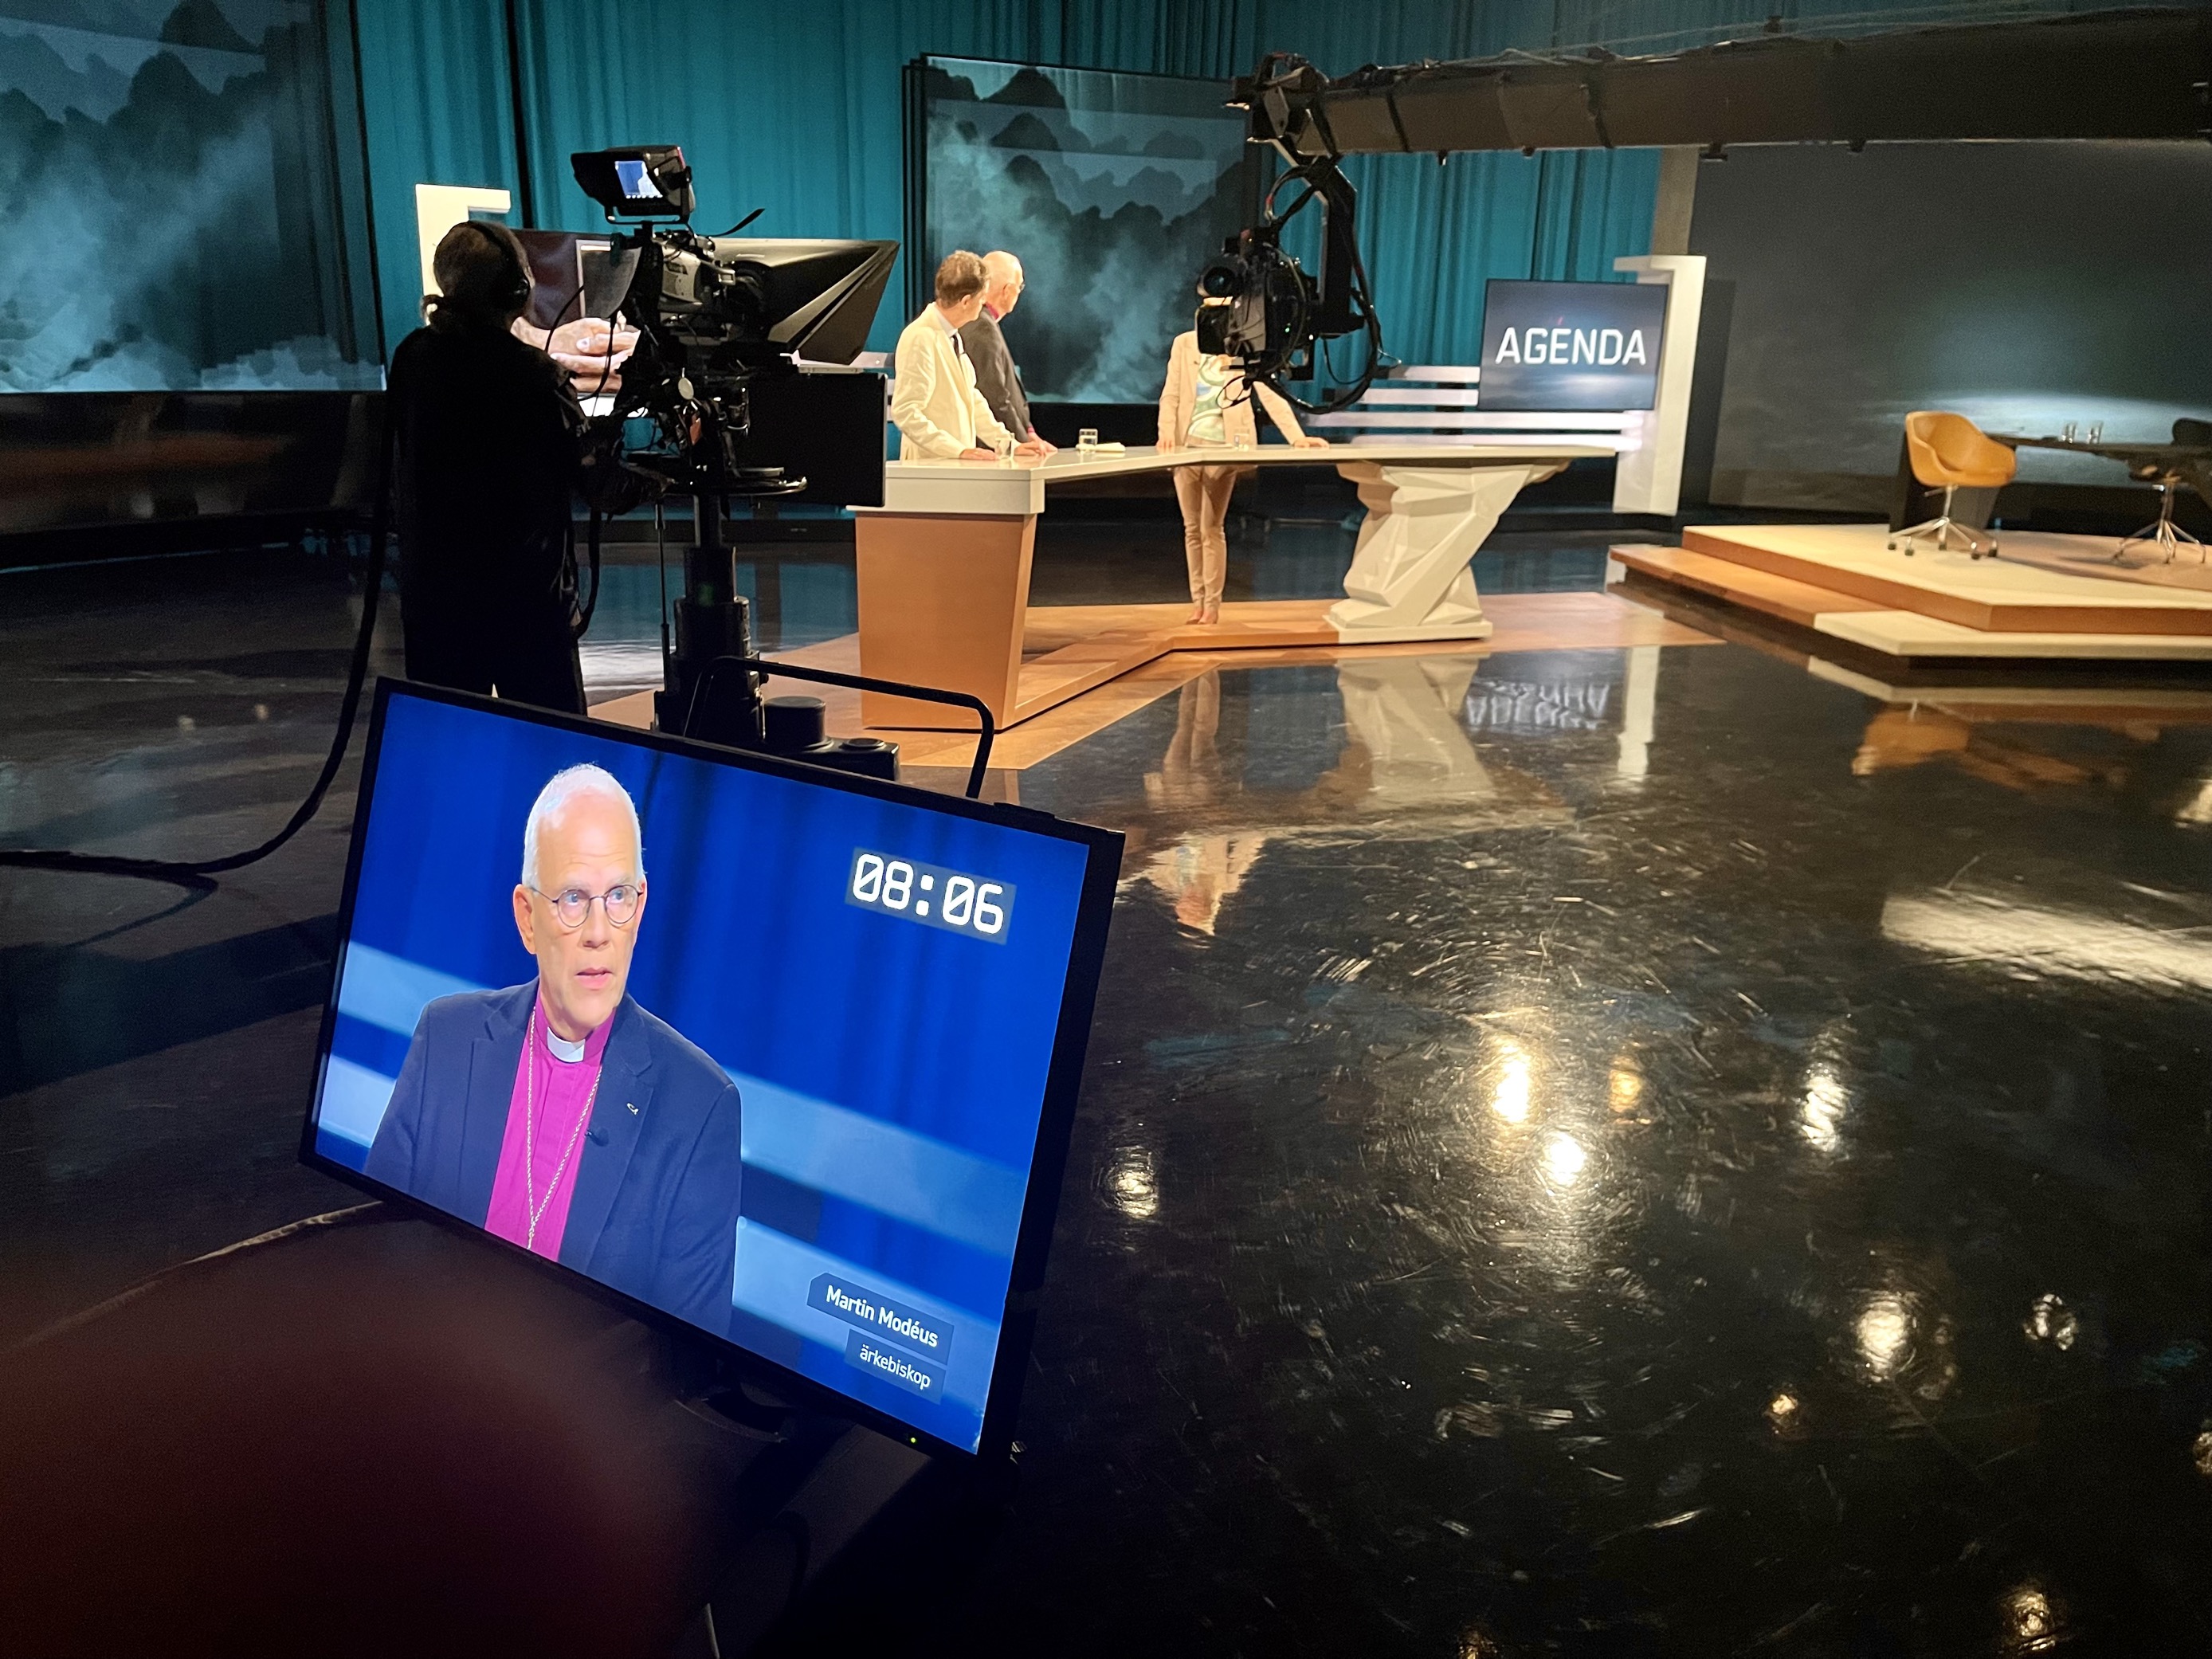 Ärkebiskop Martin Modéus intervjuas av SVT:s Agenda i en TV-studio.